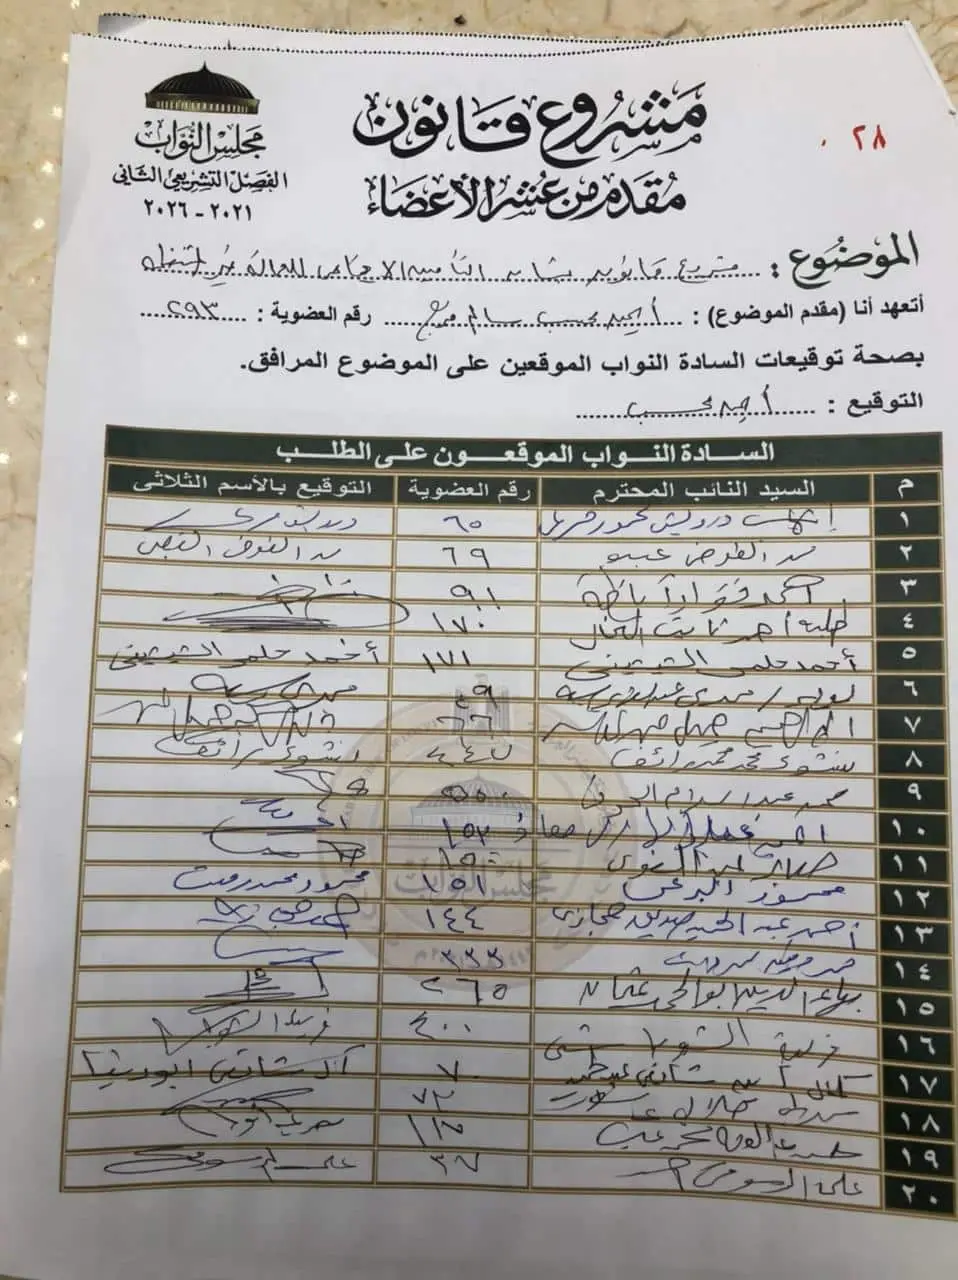 مشروع قانون أمام مكتب مجلس النواب لعمل معاش للعمالة غير المنتظمة فى مصر